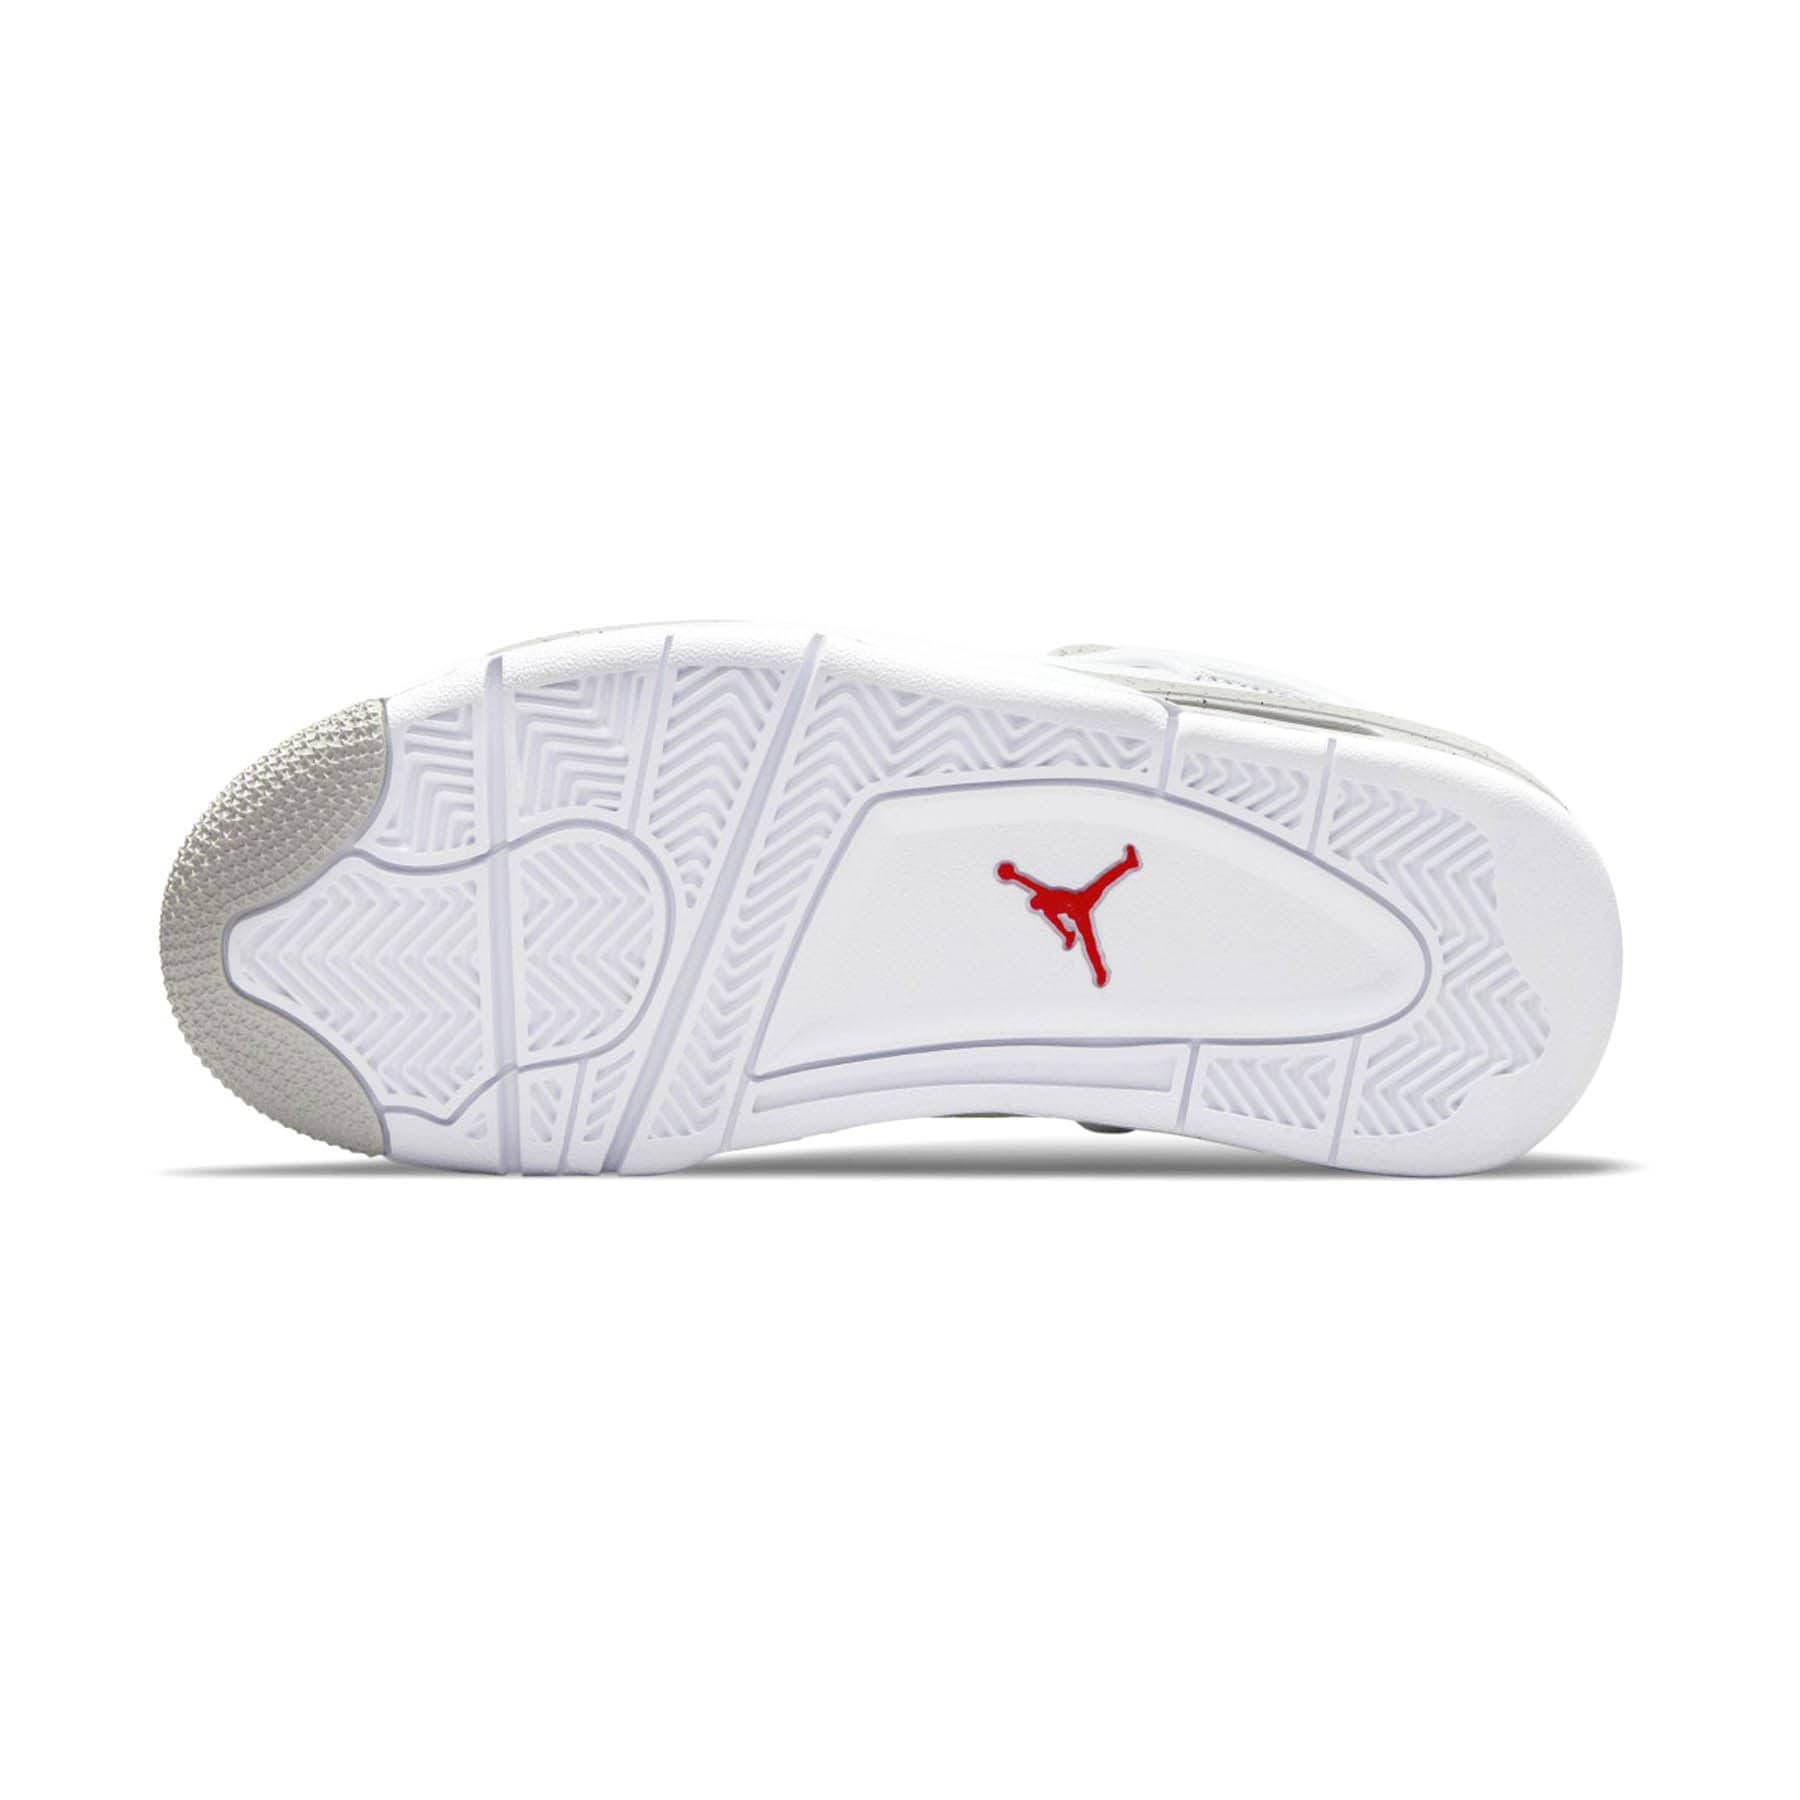 Double Boxed  499.99 Nike Air Jordan 4 Retro White Oreo Double Boxed